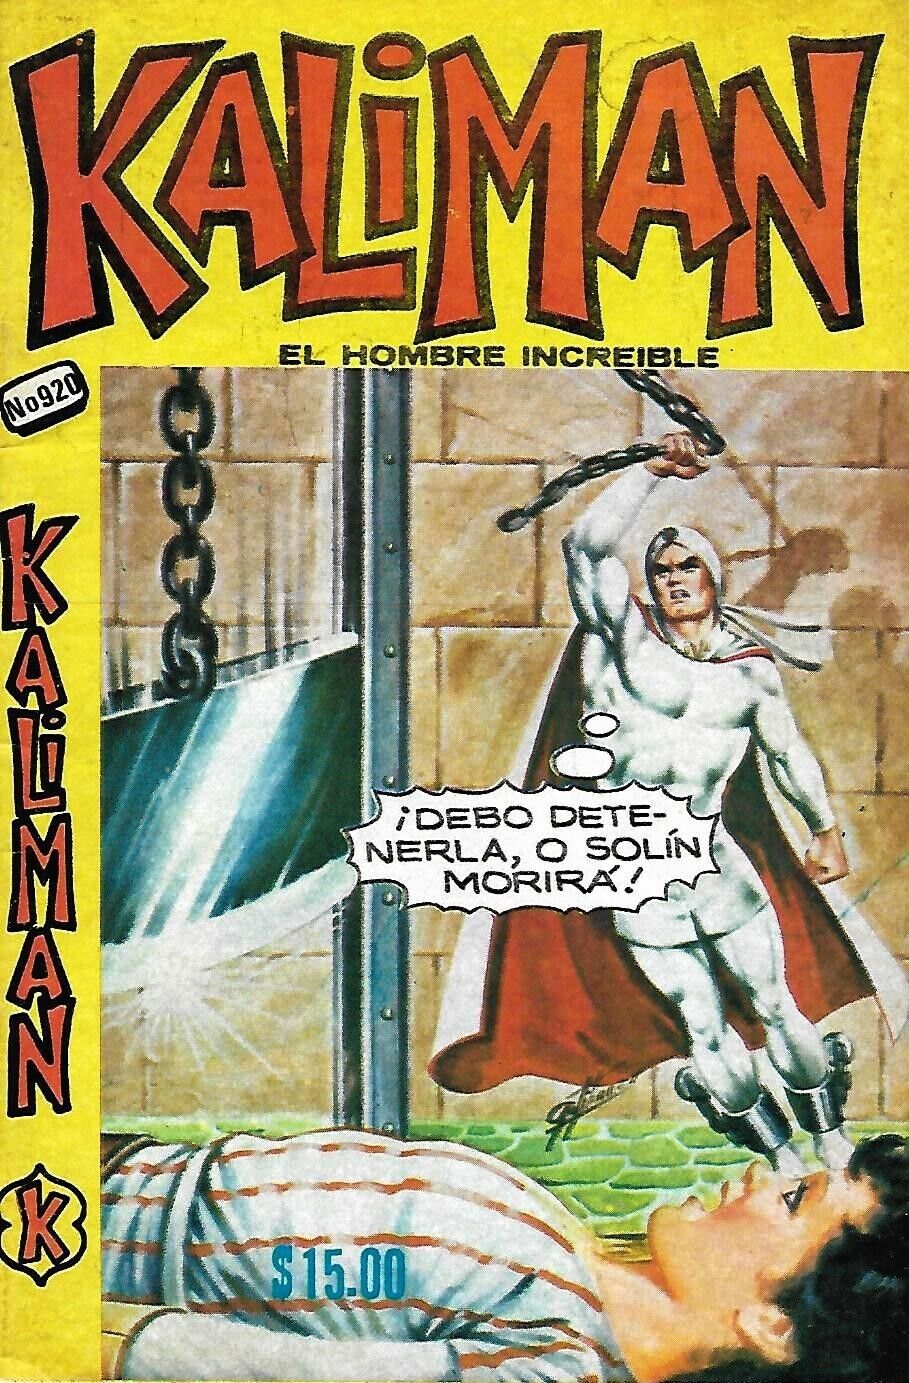 Kaliman El Hombre Increible #920 - Julio 15, 1983 - Mexico